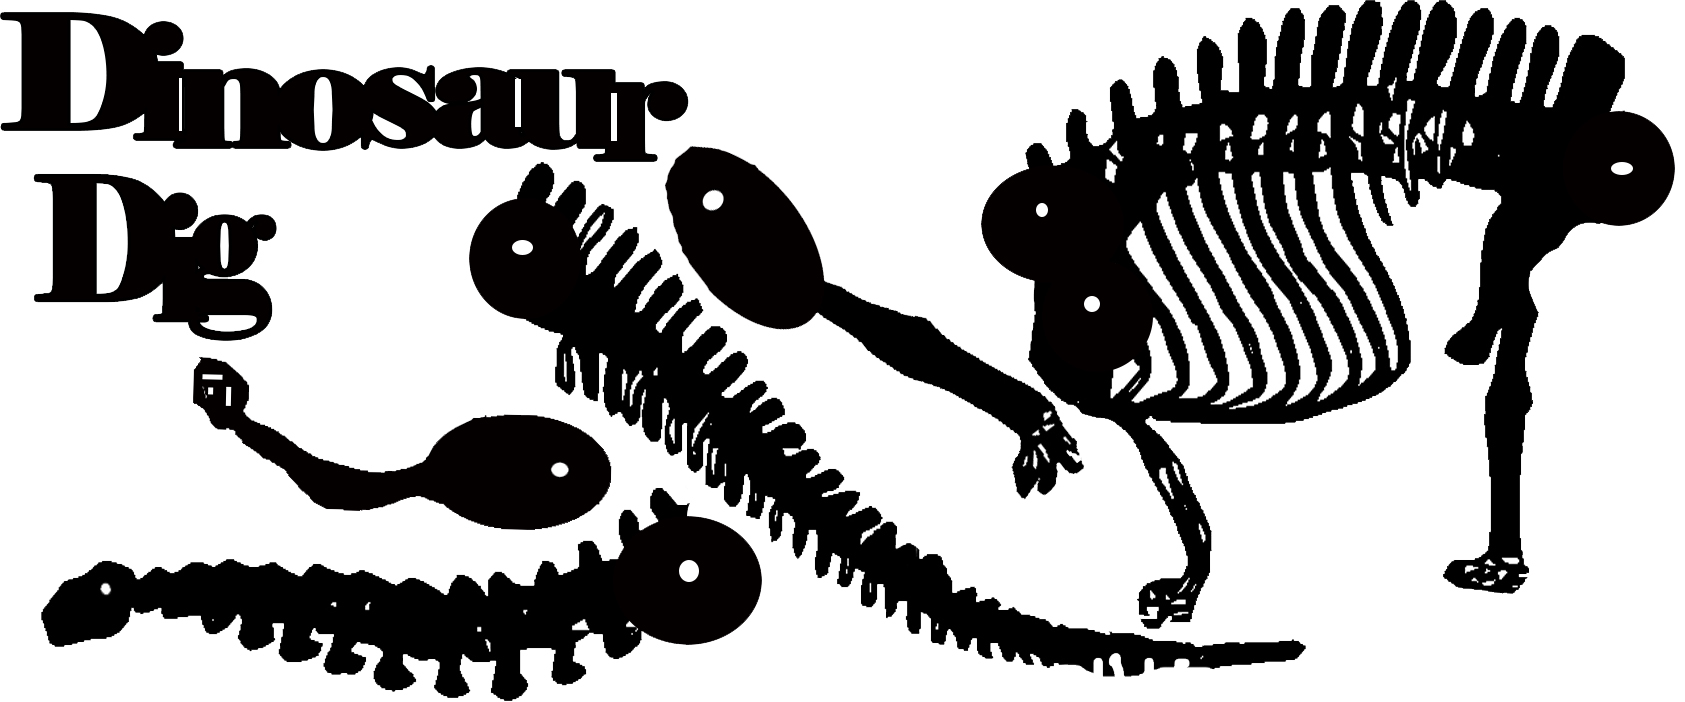 Dinosaur diplodicus skeleton Large 250 x 120  sold individually